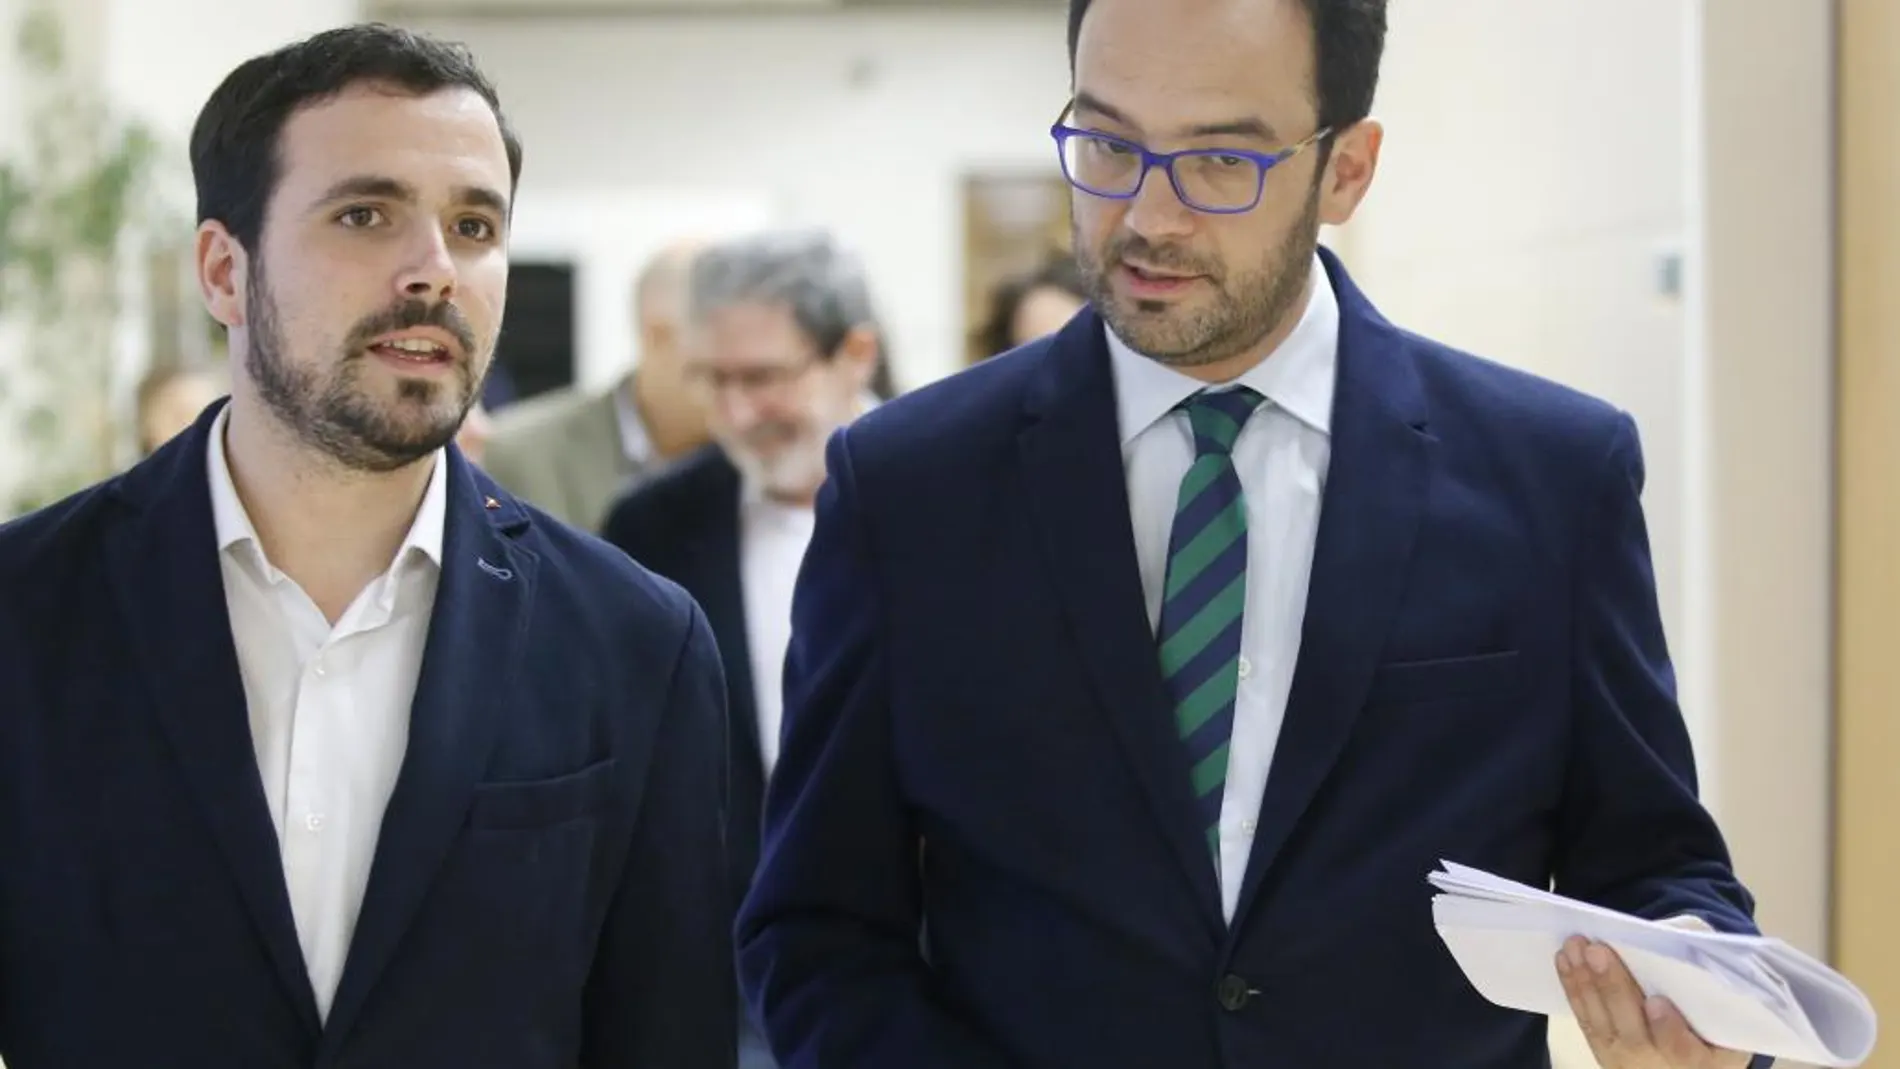 Alberto Garzón y Antonio Hernando encabezan los equipos negociadores de sus partidos